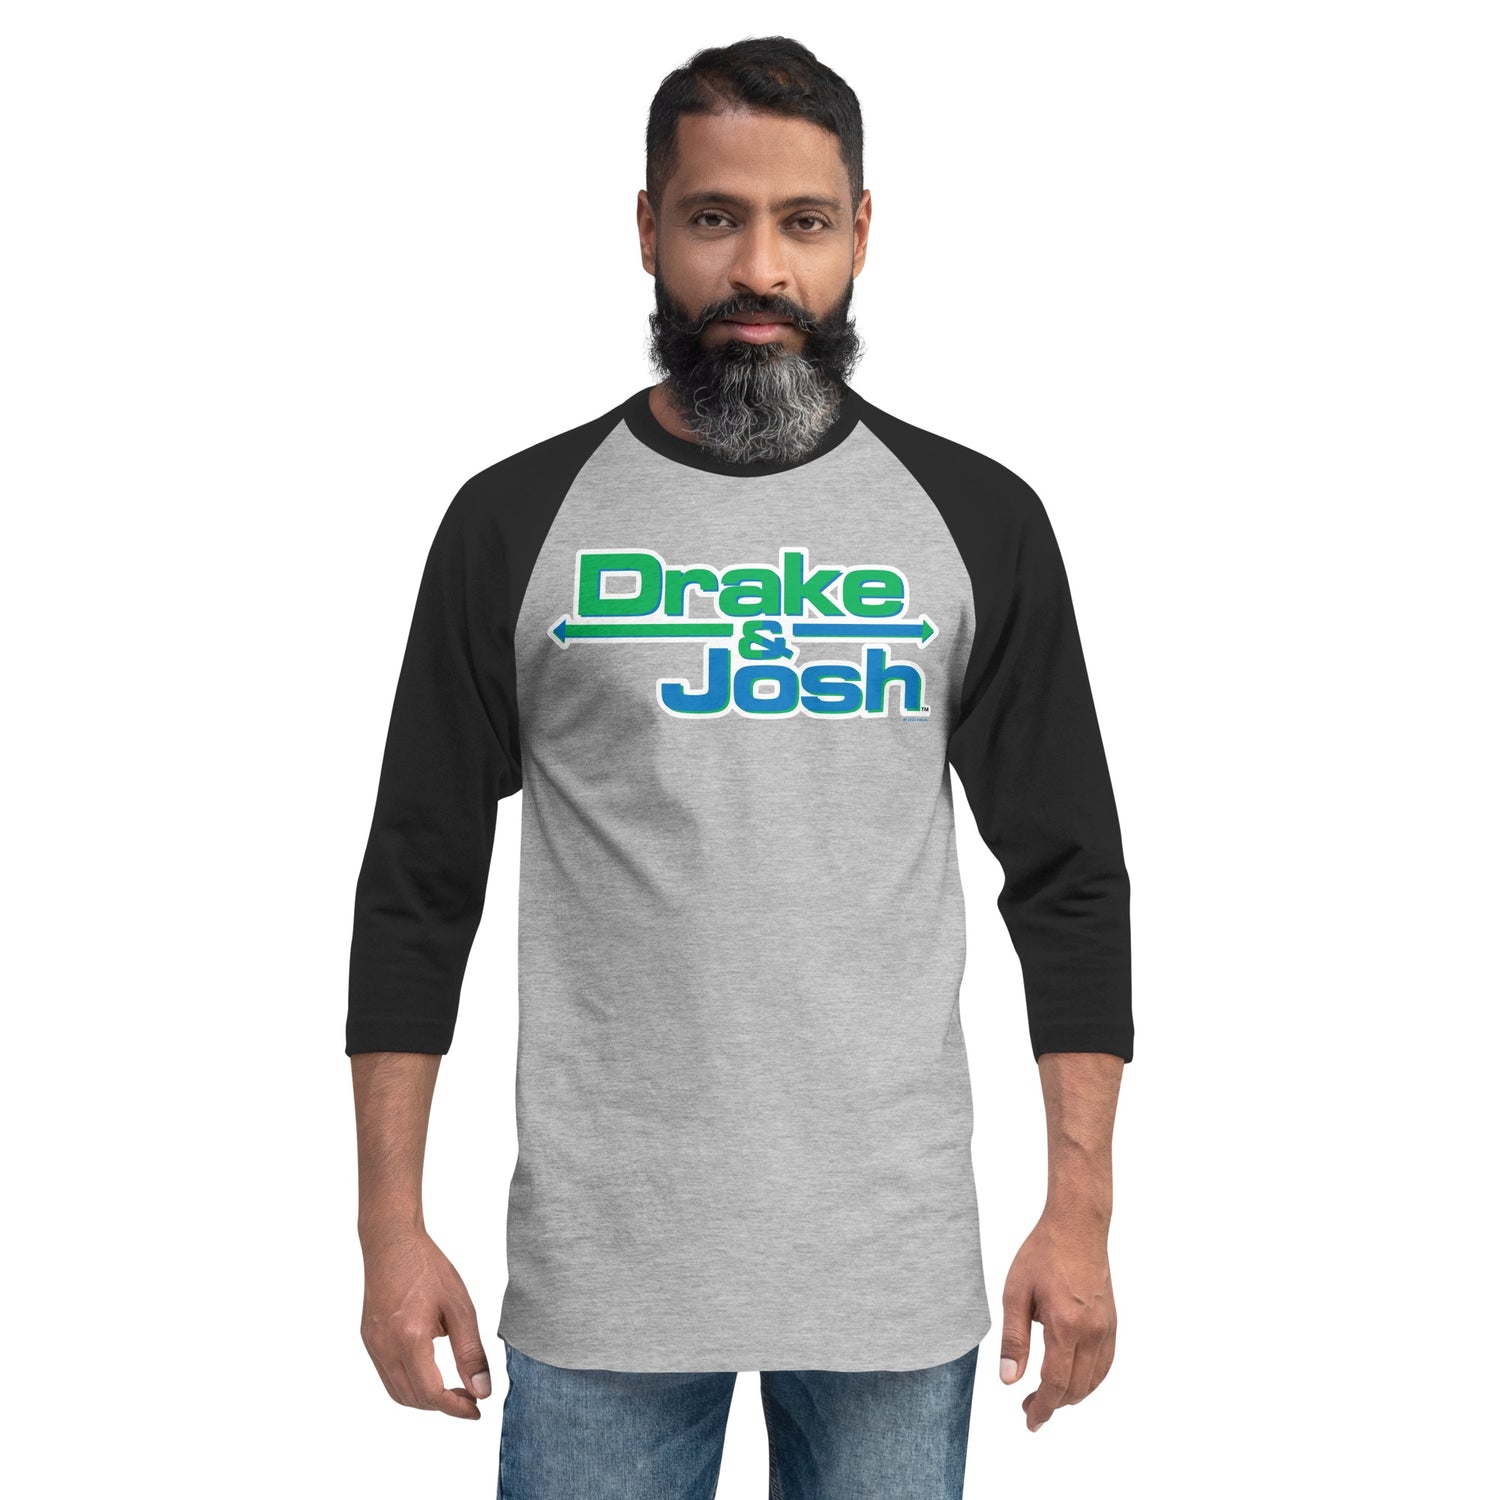 Drake & Josh Logo Adult 3/4 Raglan Shirt